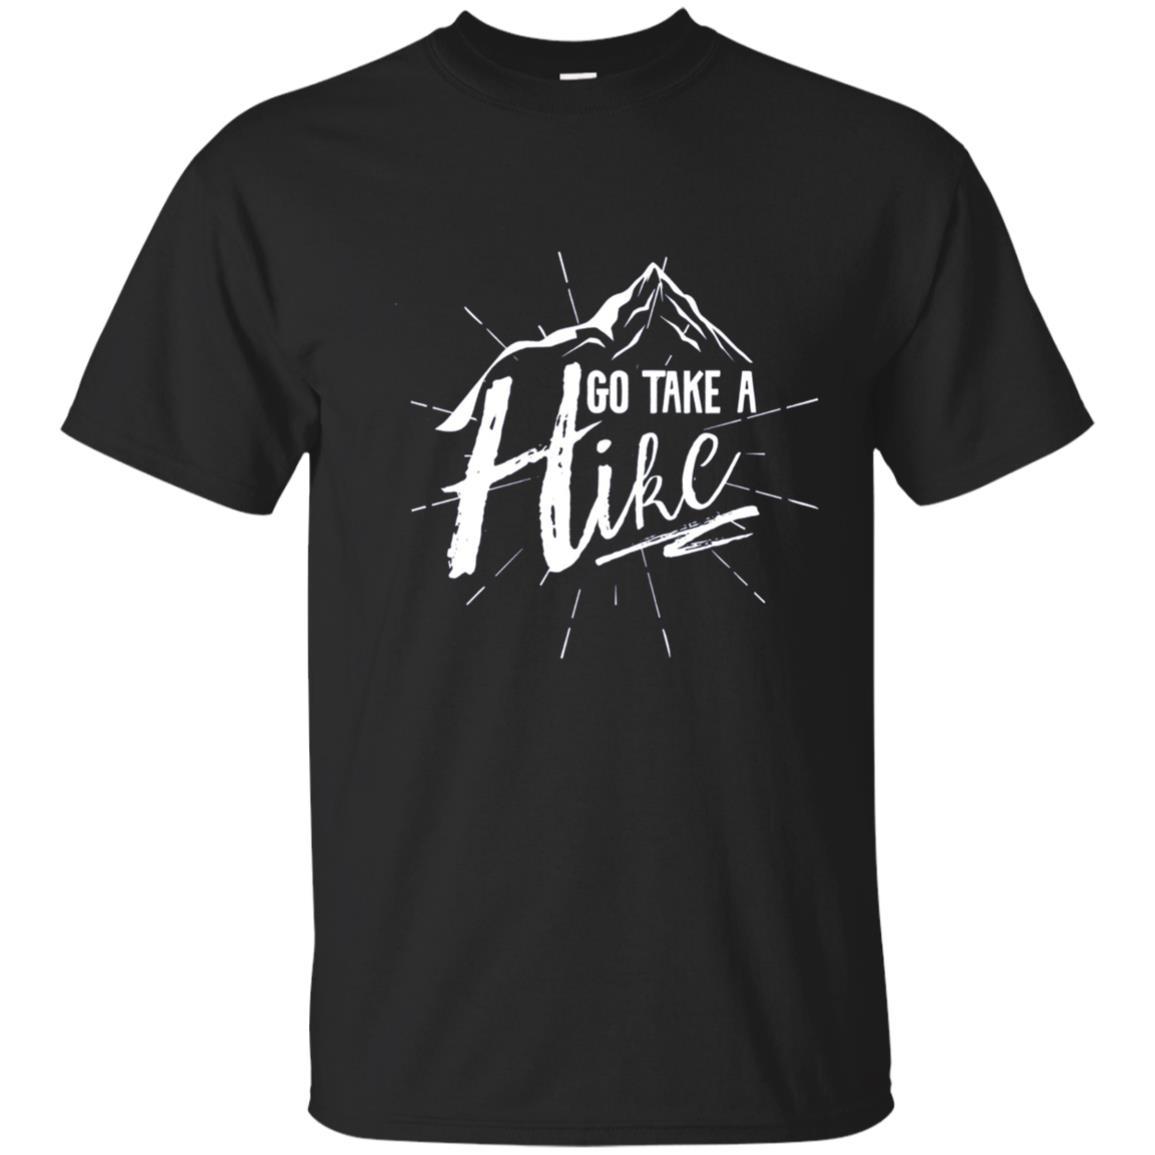 Hikers Go Take A Hike T-shirt